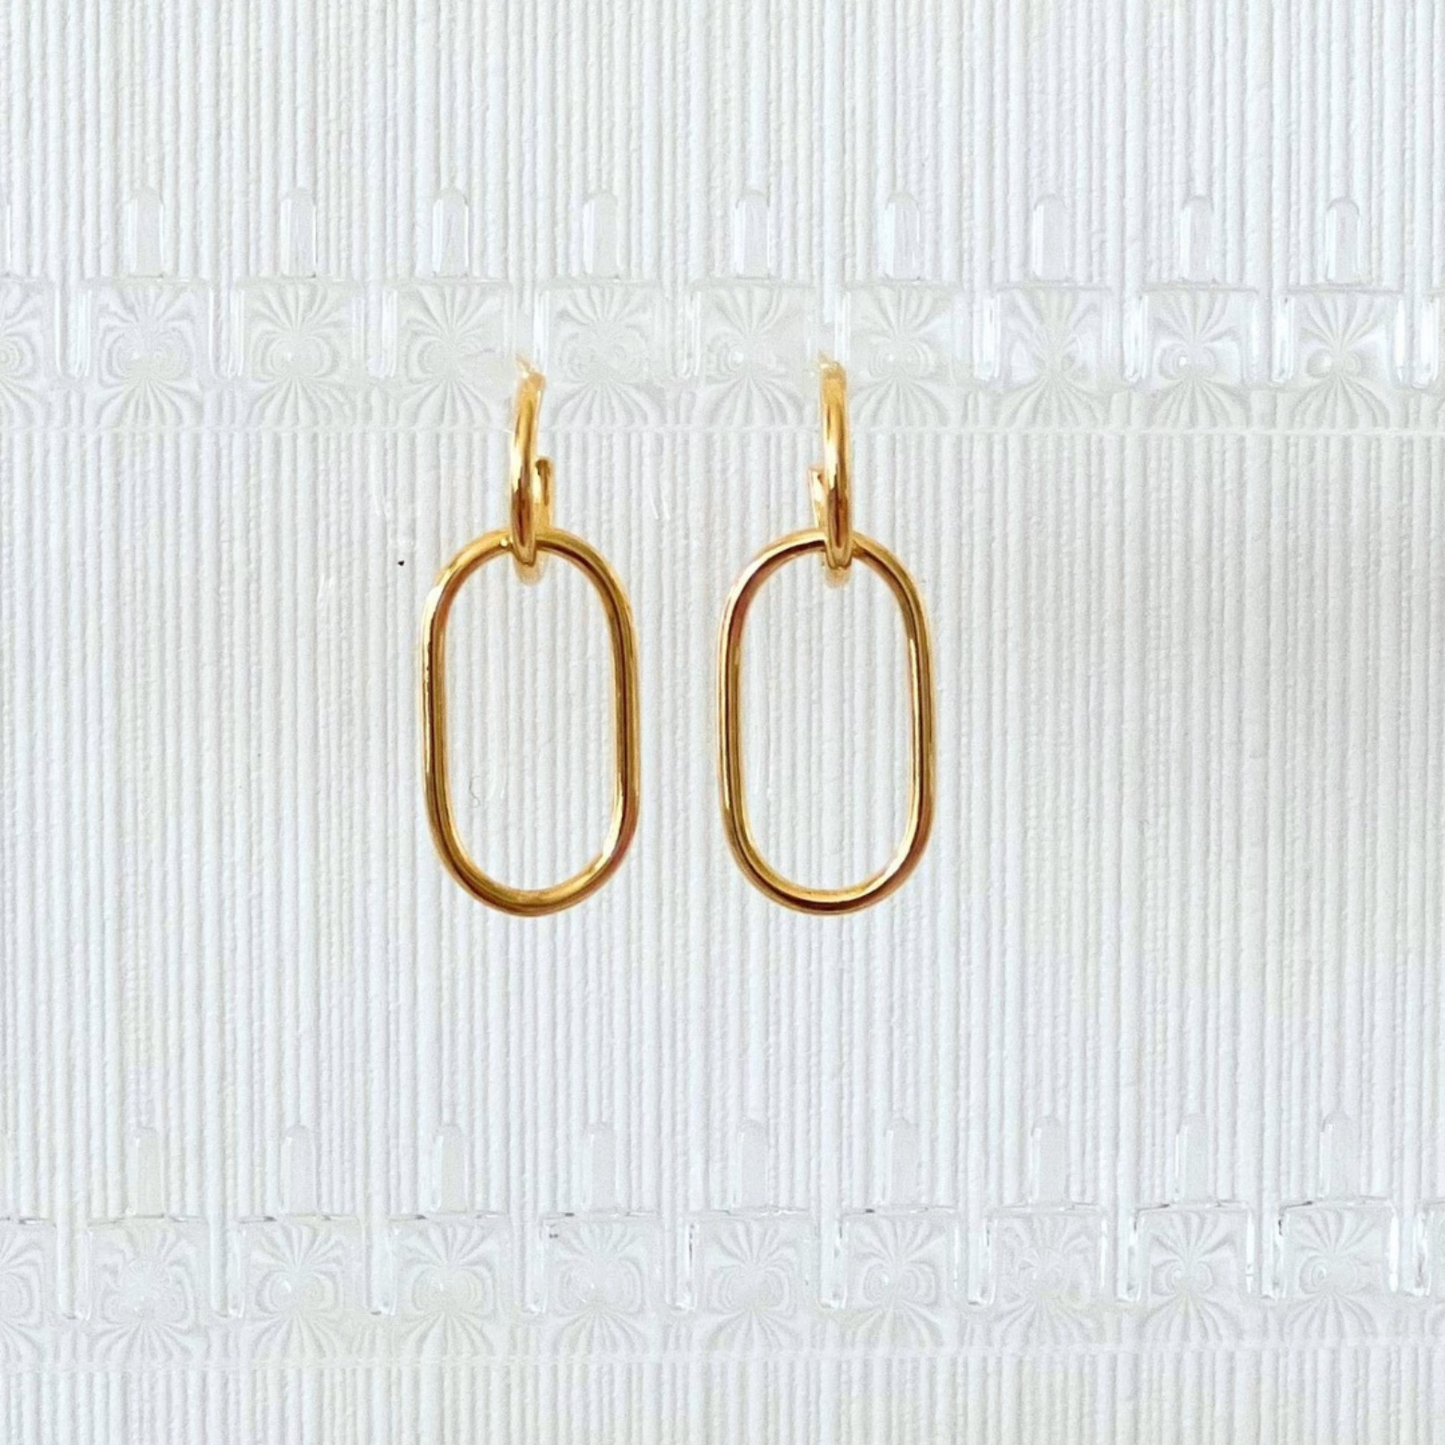 Woong 18k Gold Vermeil Ovate Earrings- KORYANGS Brand